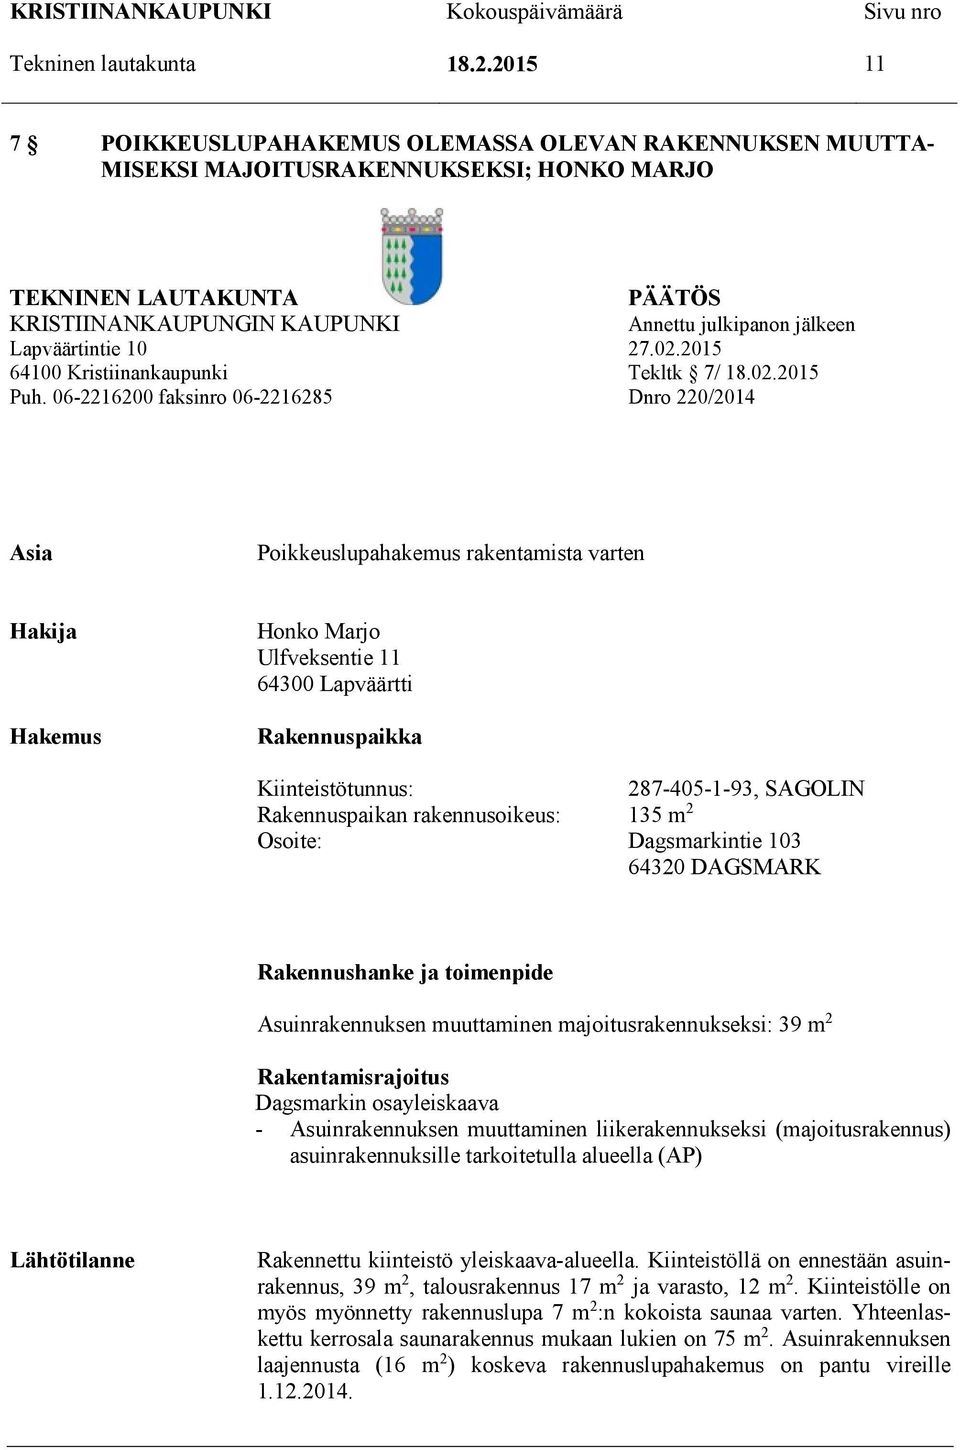 Lapväärtintie 10 27.02.2015 64100 Kristiinankaupunki Tekltk 7/ 18.02.2015 Puh.